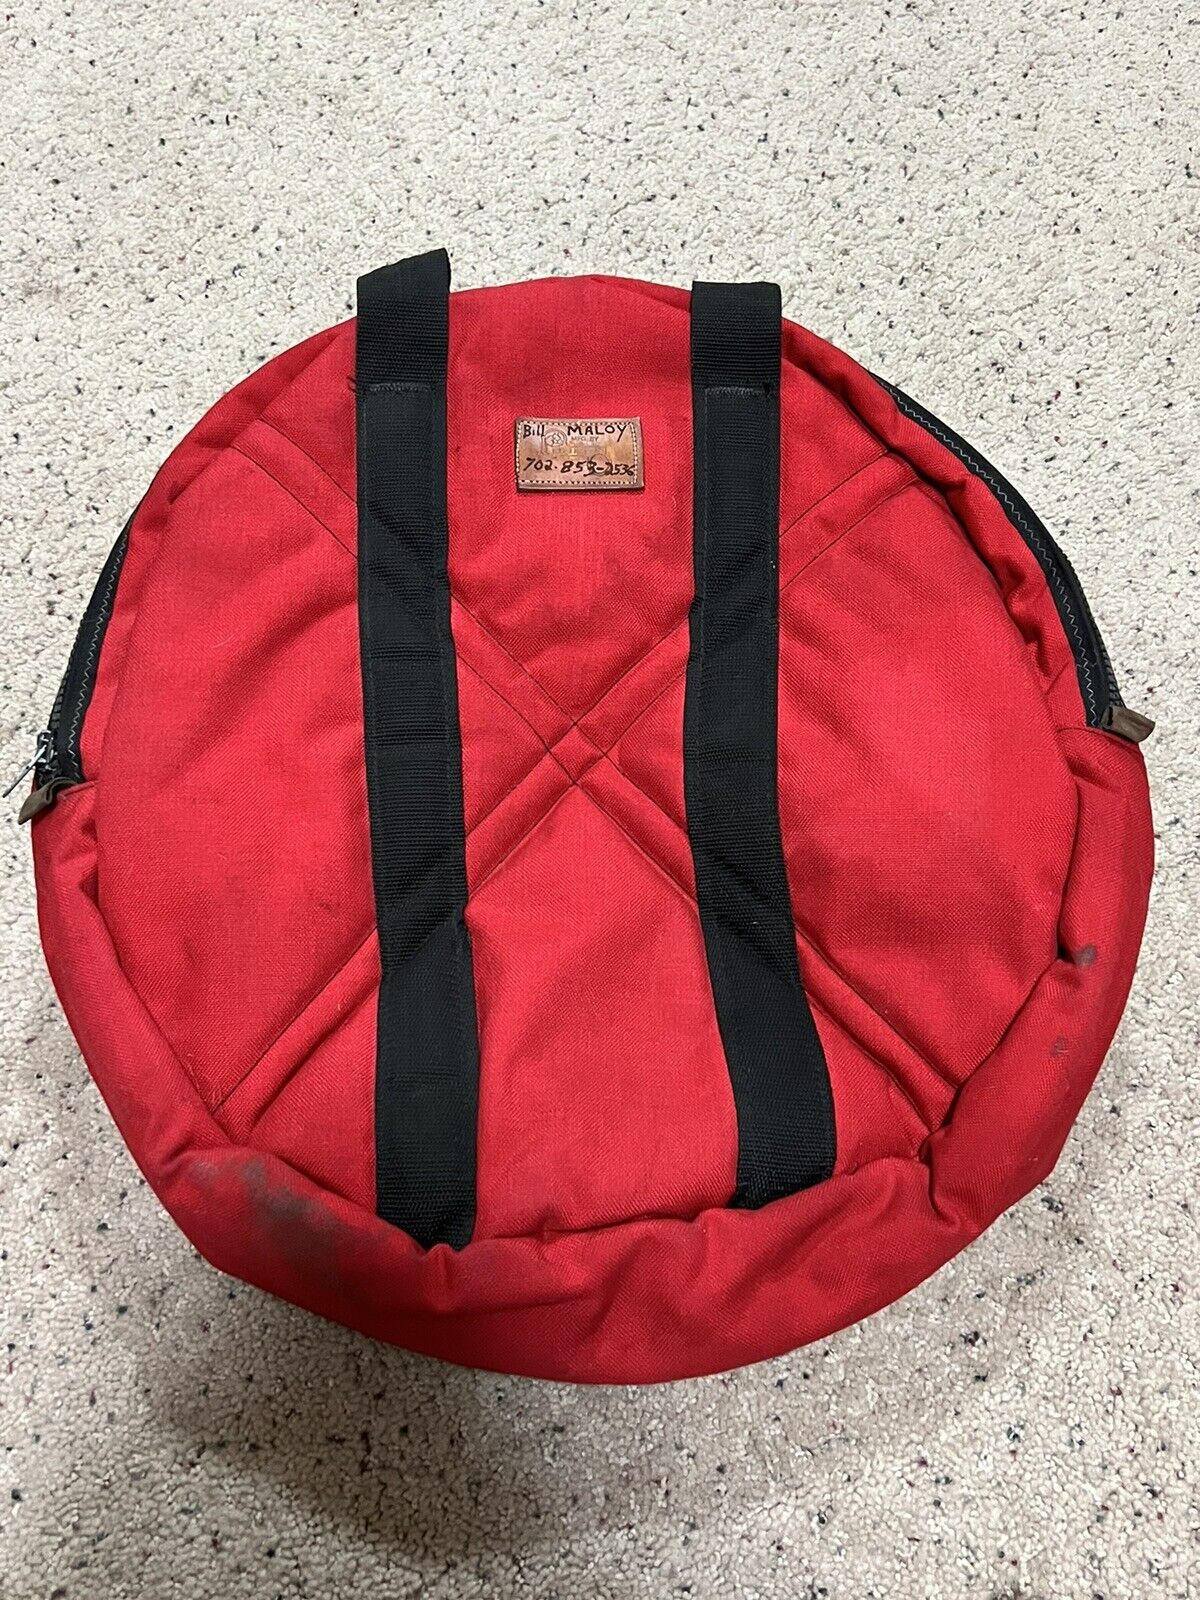 Vintage Leakes Mfg. Red Dual 2 Pocket Padded Zip Up Roping Rope Bag Case